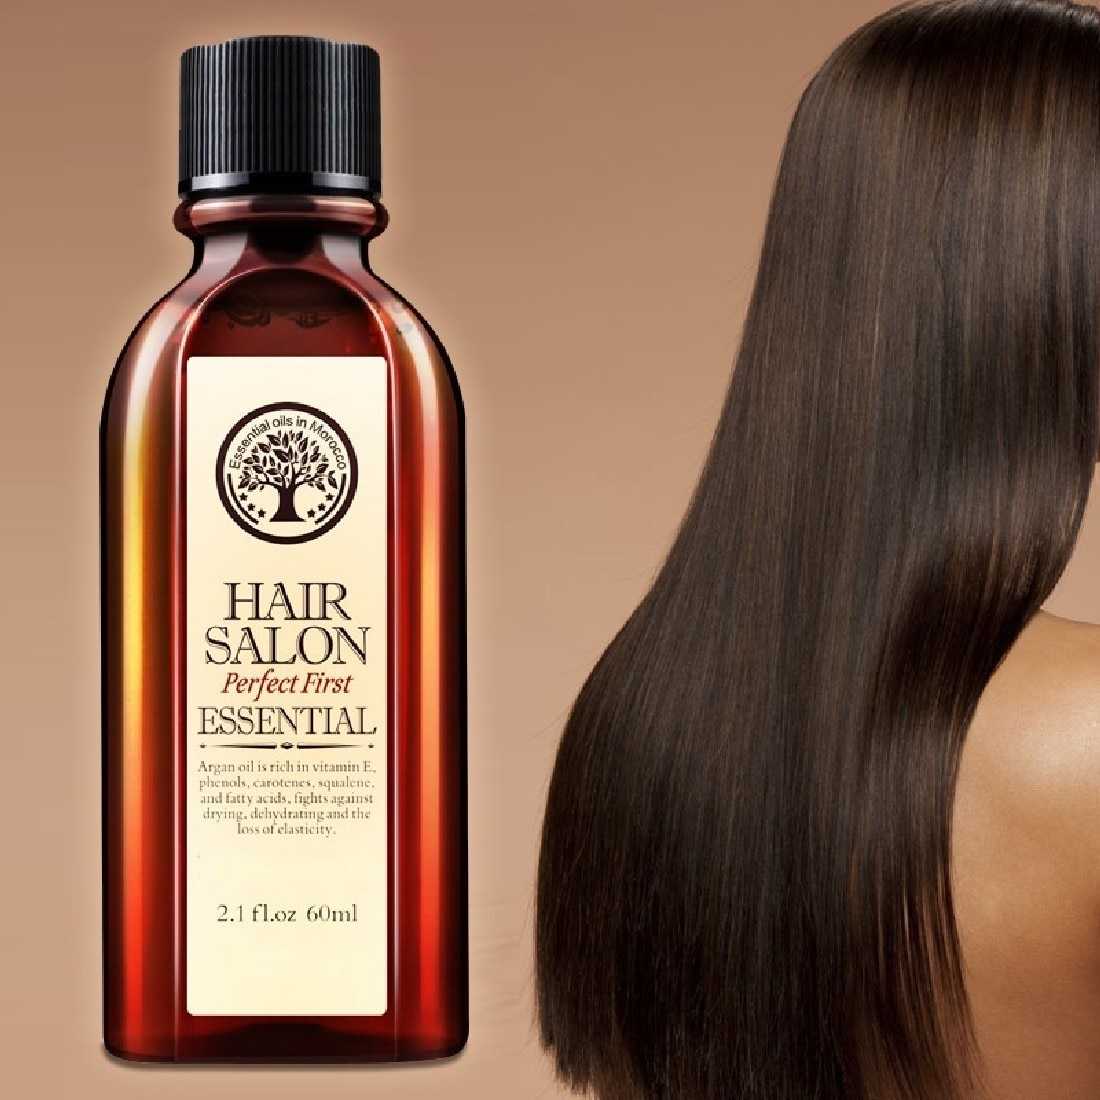 Нужны ли эфирные масла для волос вам?